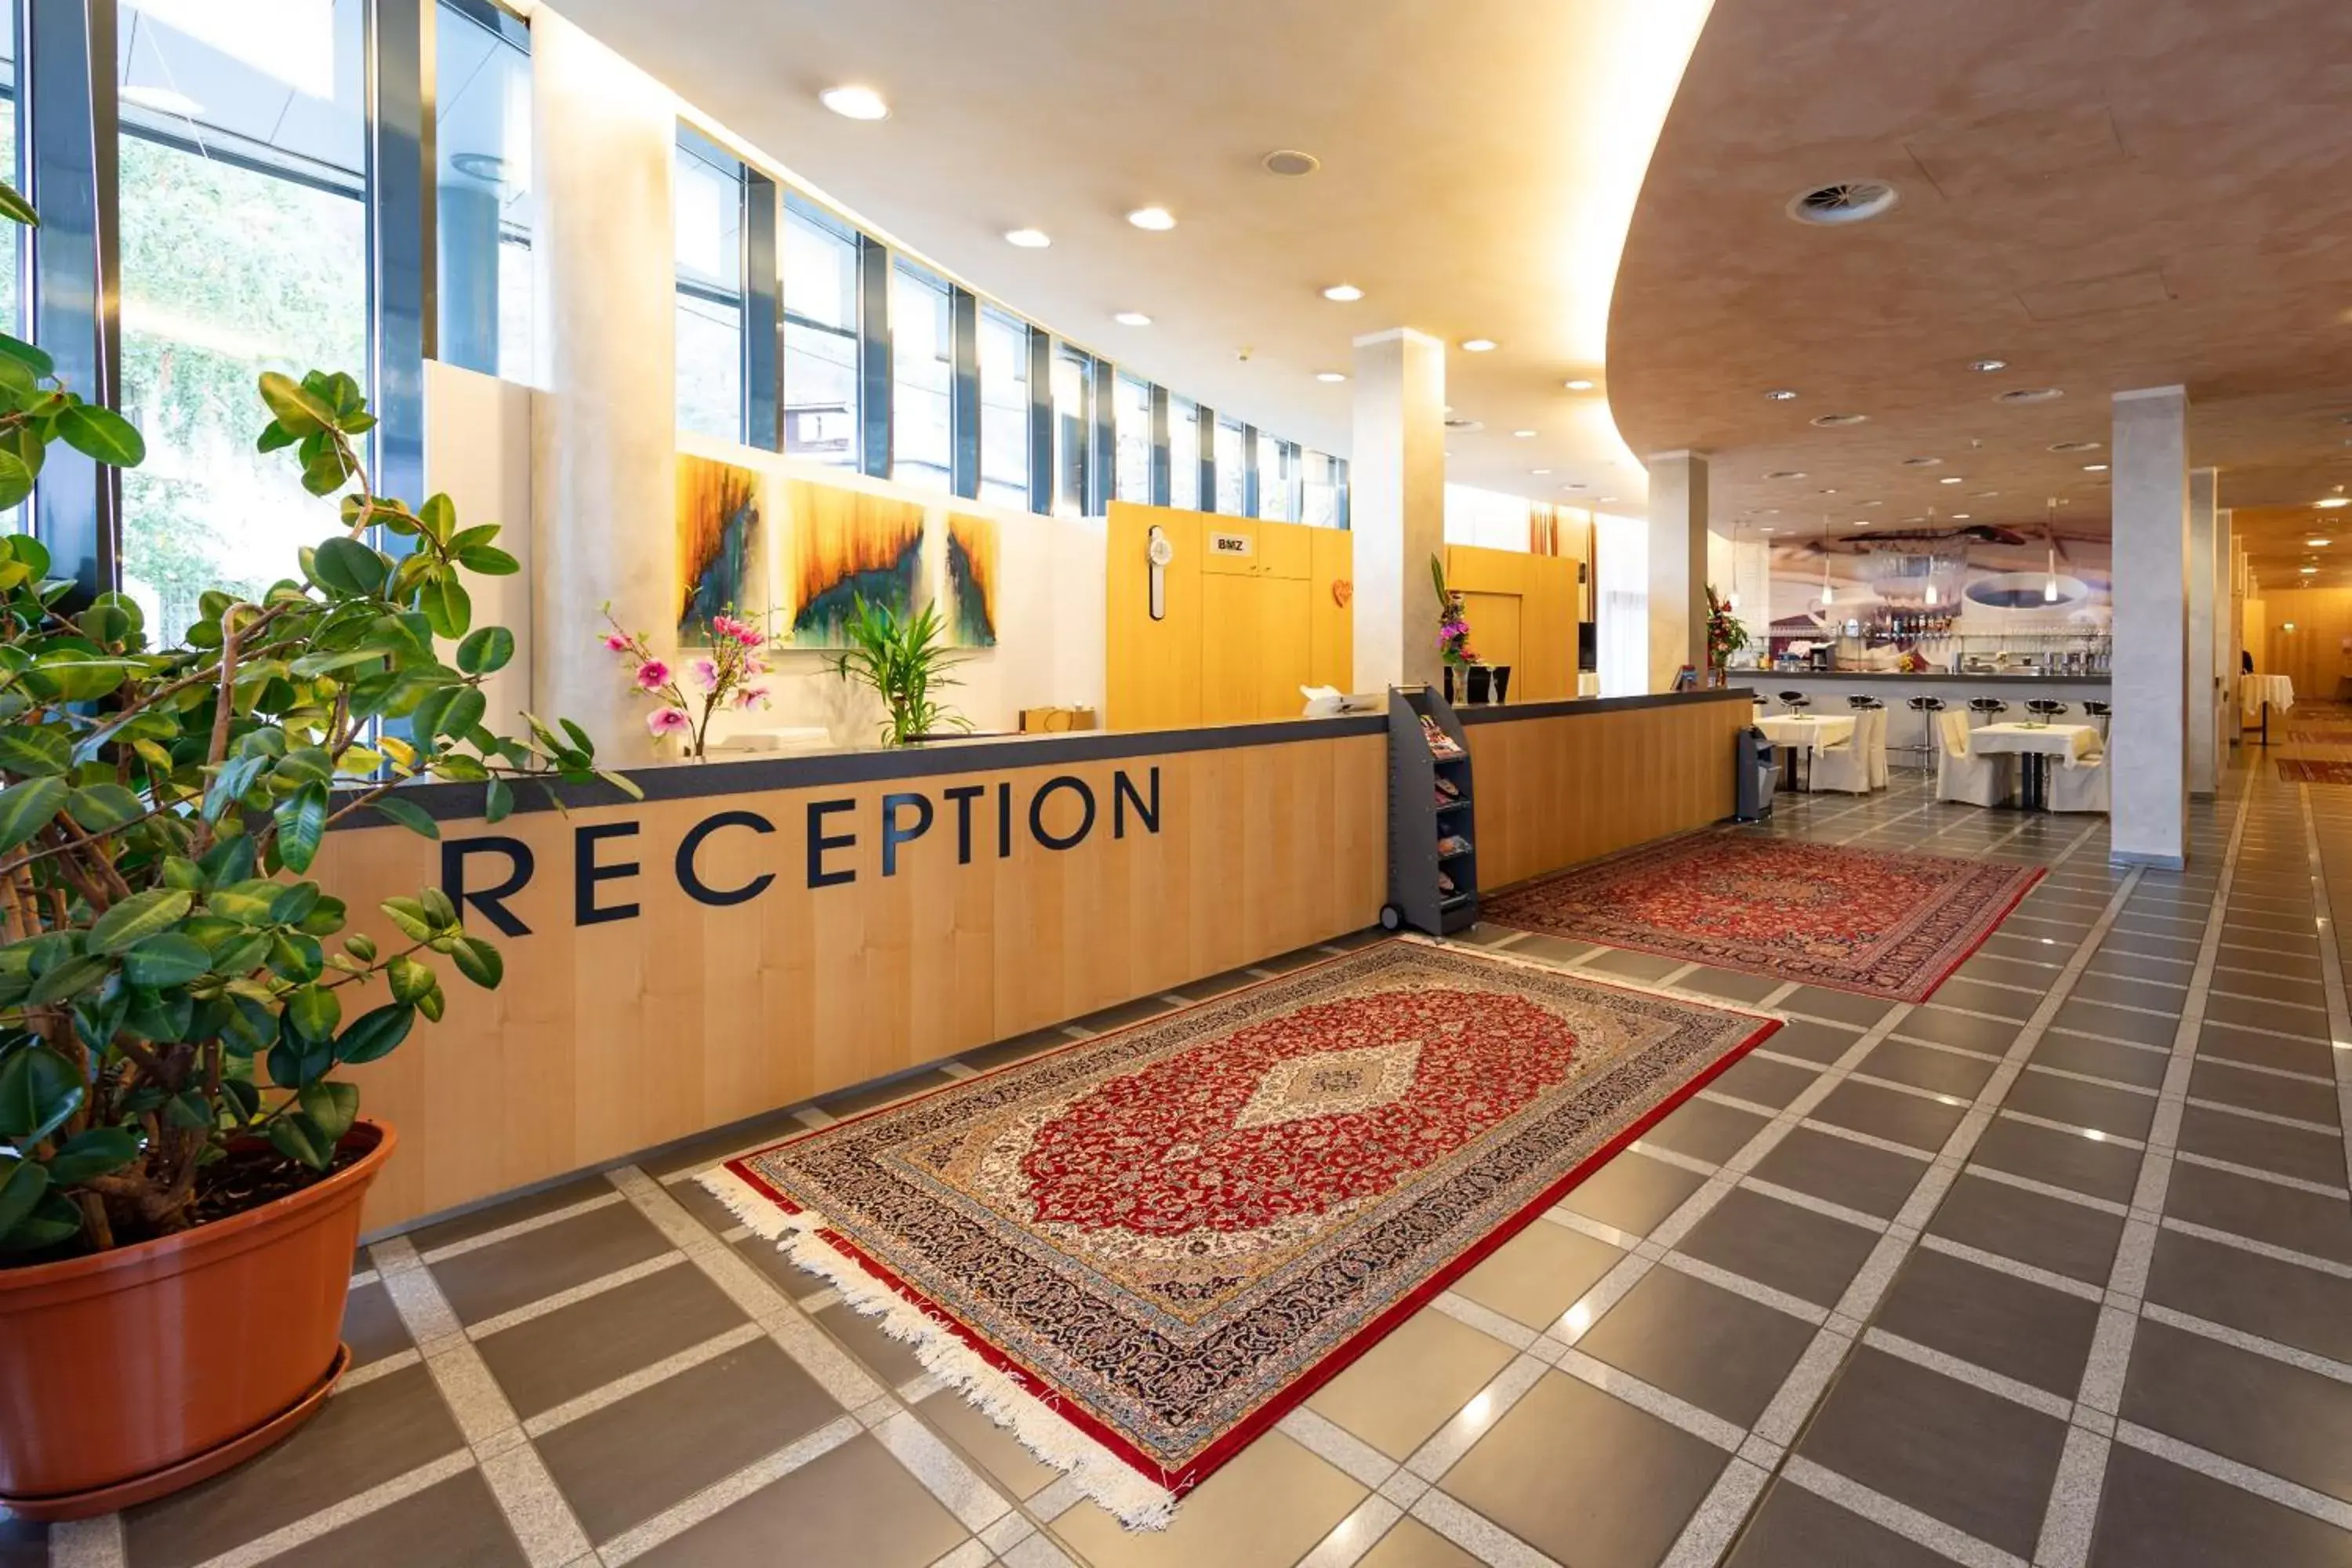 Lobby or reception in Hotel Bokan Exclusiv